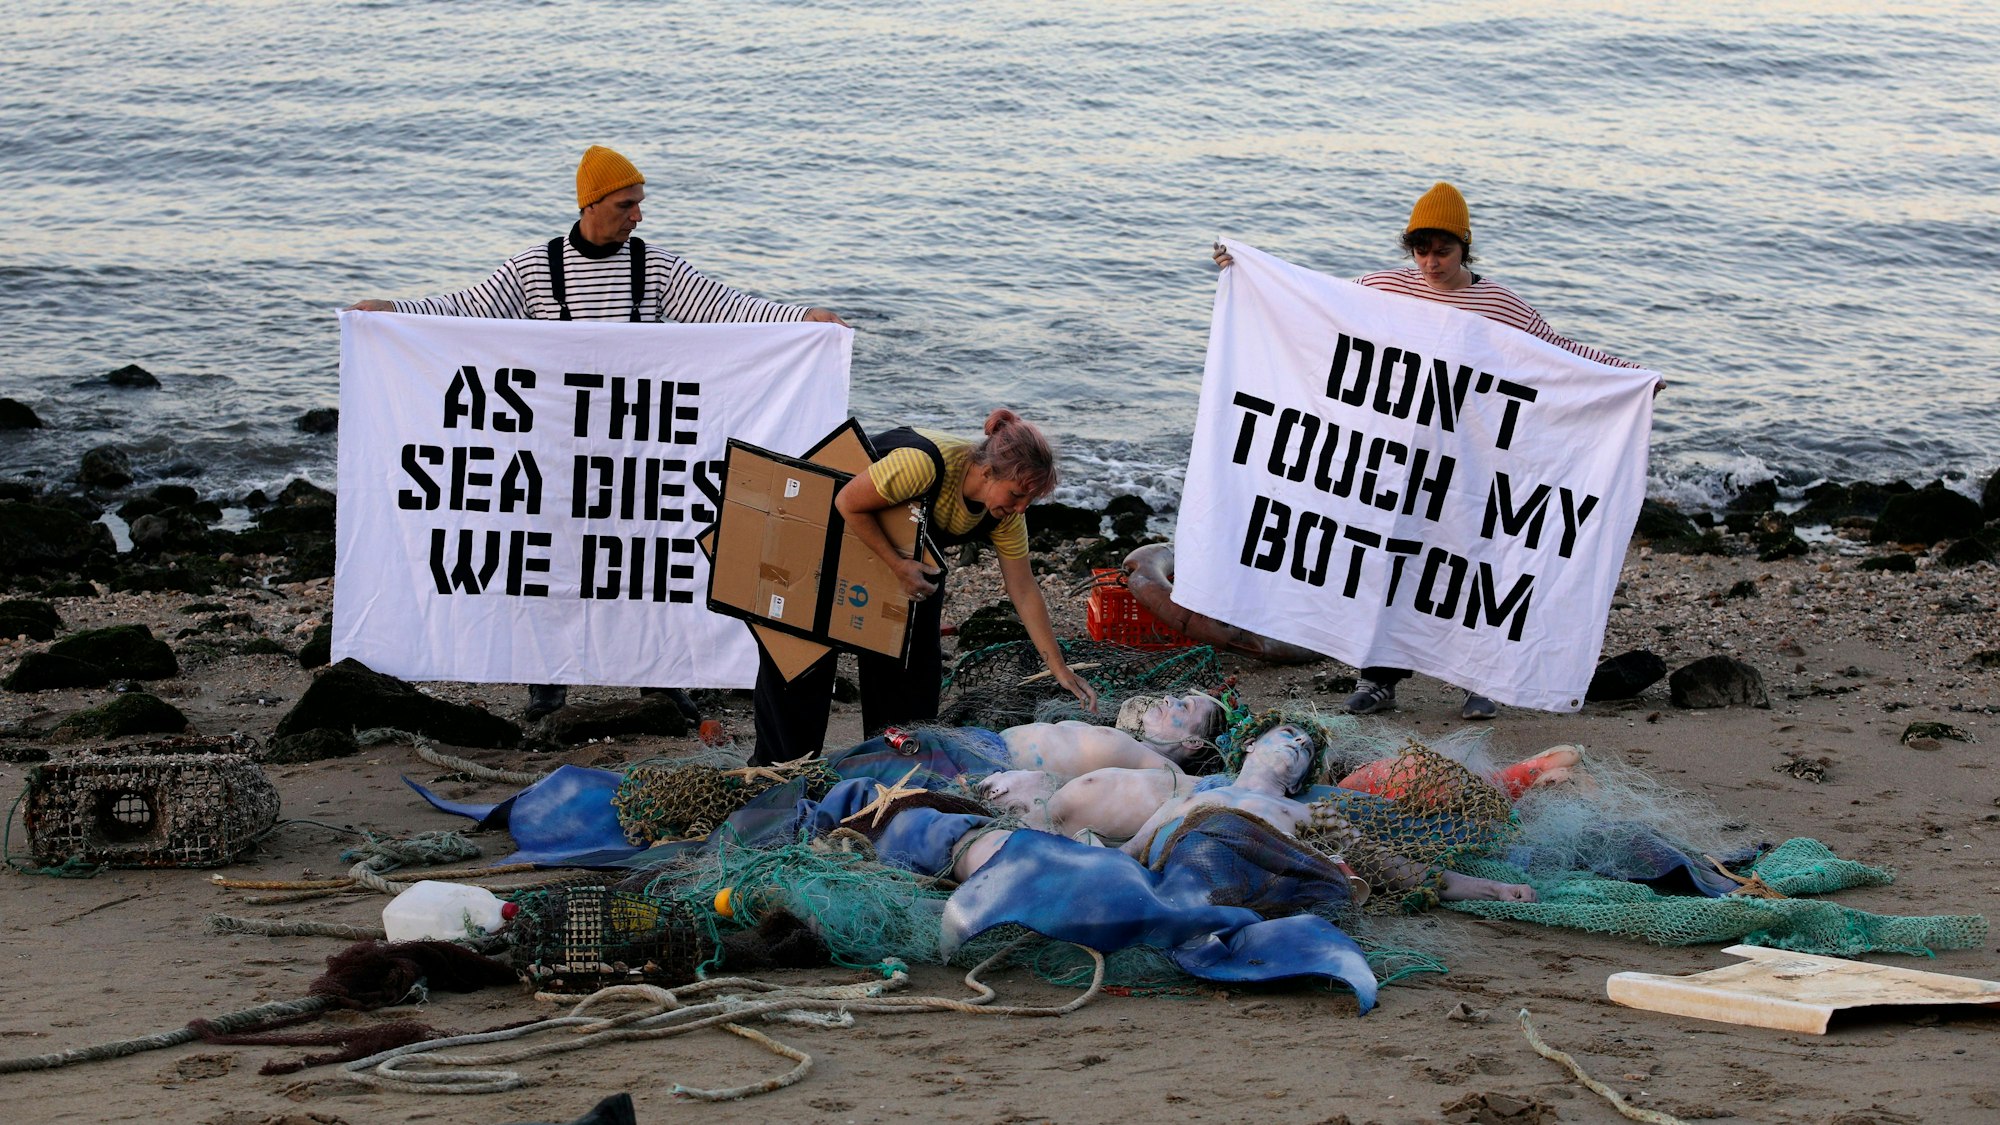 Aktivisten der Ocean Rebellion veranstalten am Ufer des Tejo eine Performance, bei der sie ein Ende aller nationalen Treibstoffsubventionen für Fischereiflotten und ein Verbot der Grundschleppnetzfischerei fordern.